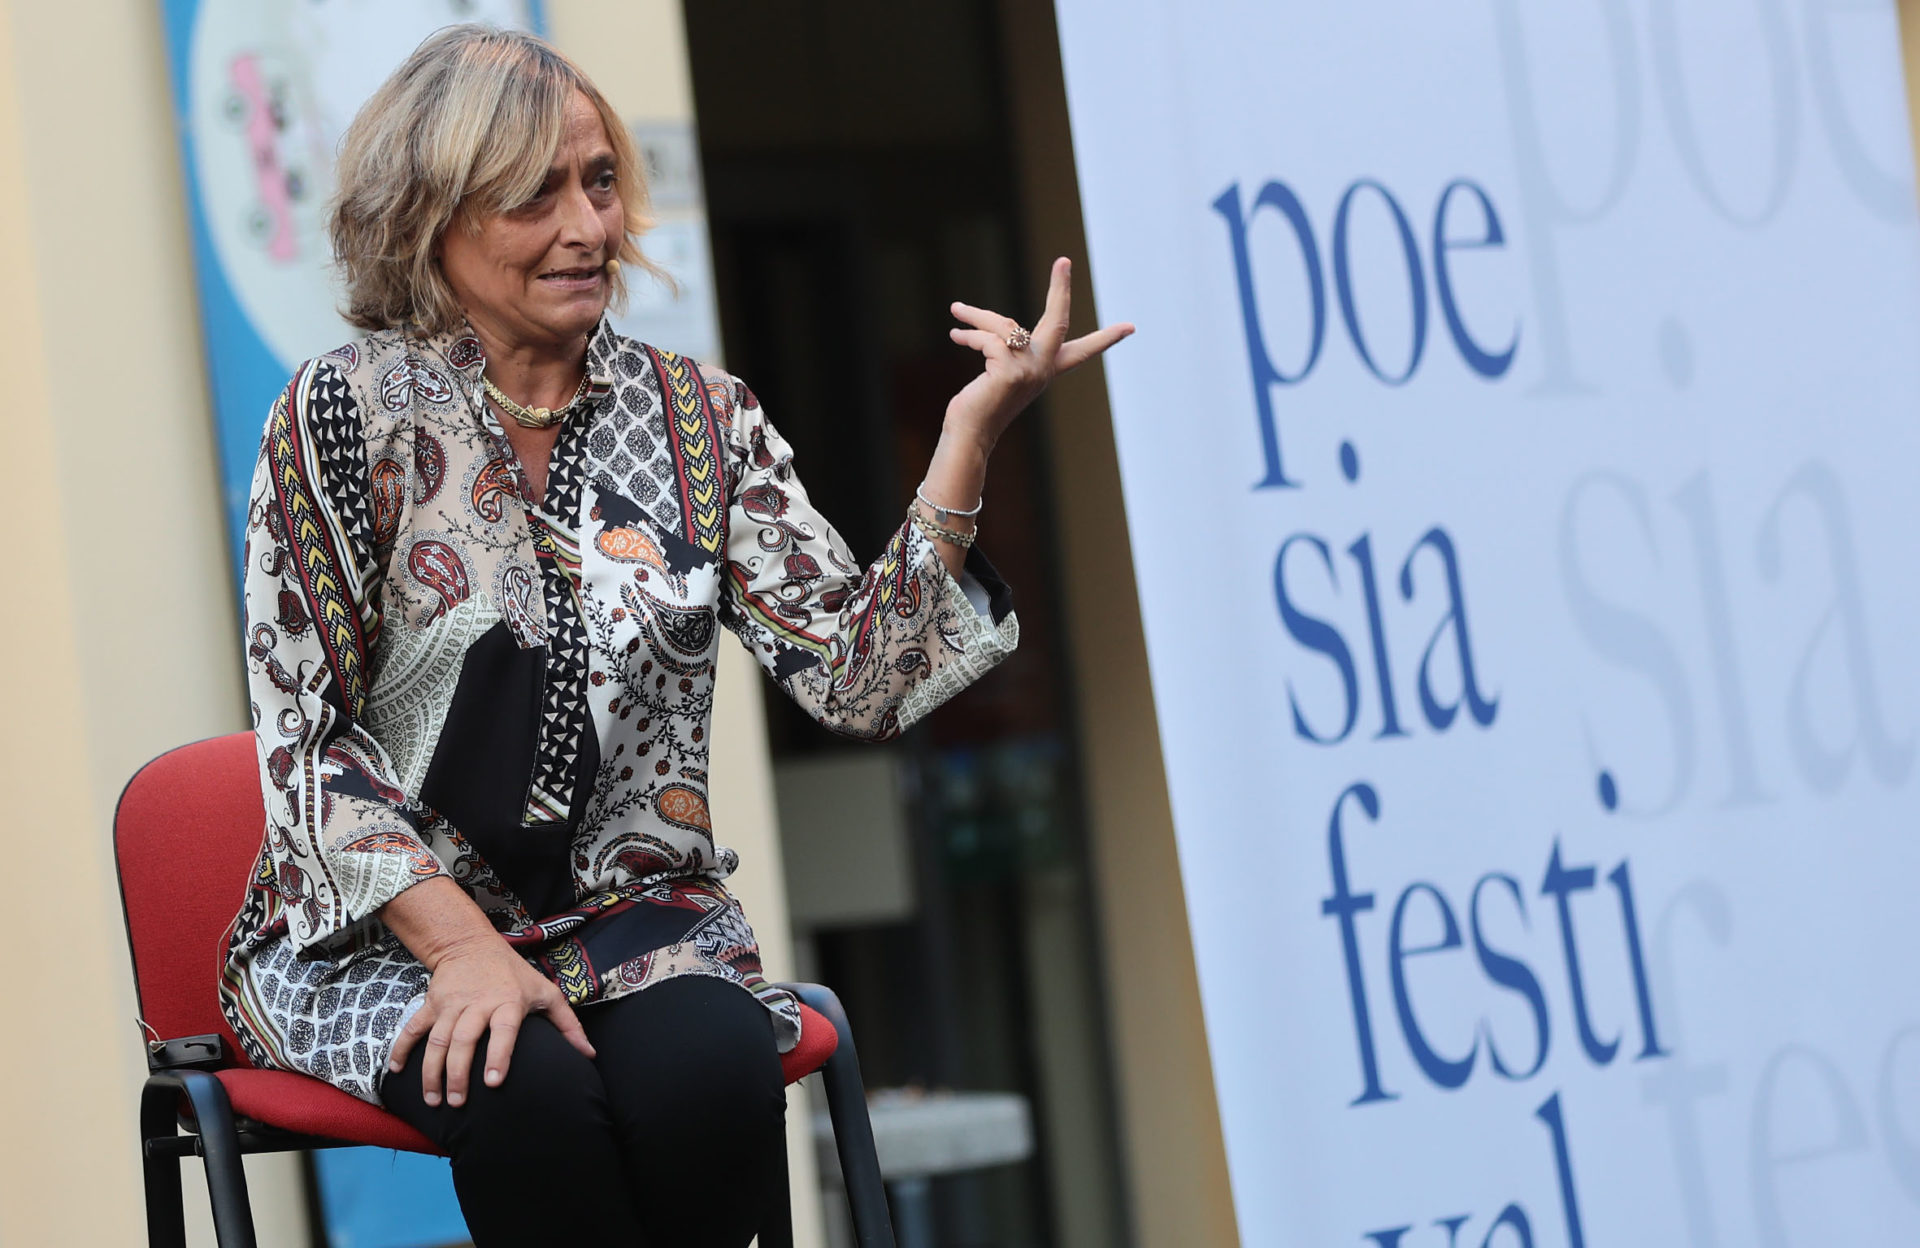 oltre la fine la città nuova castelnuovo rangone poesia festival ’18 photo © Elisabetta Baracchi